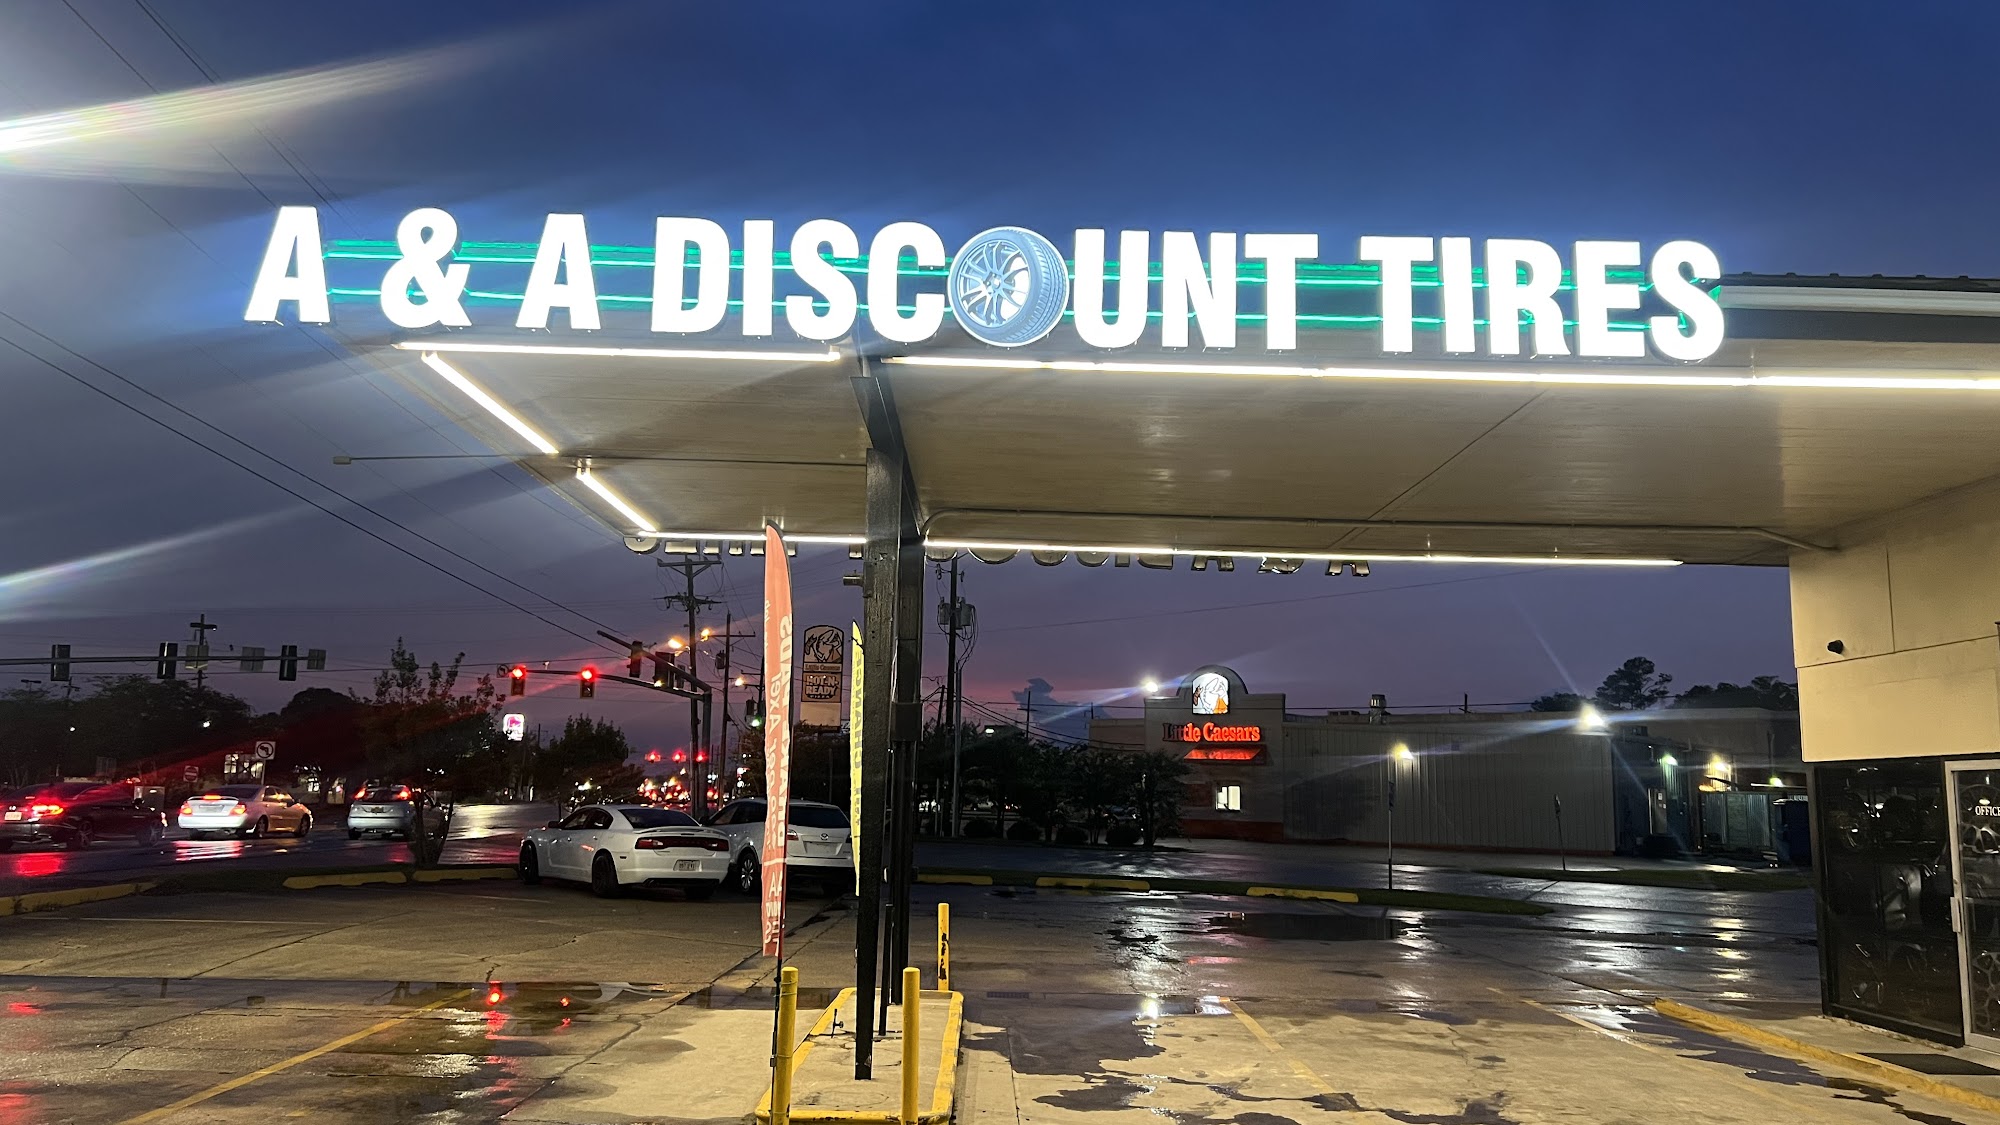 A&A Discount Tires